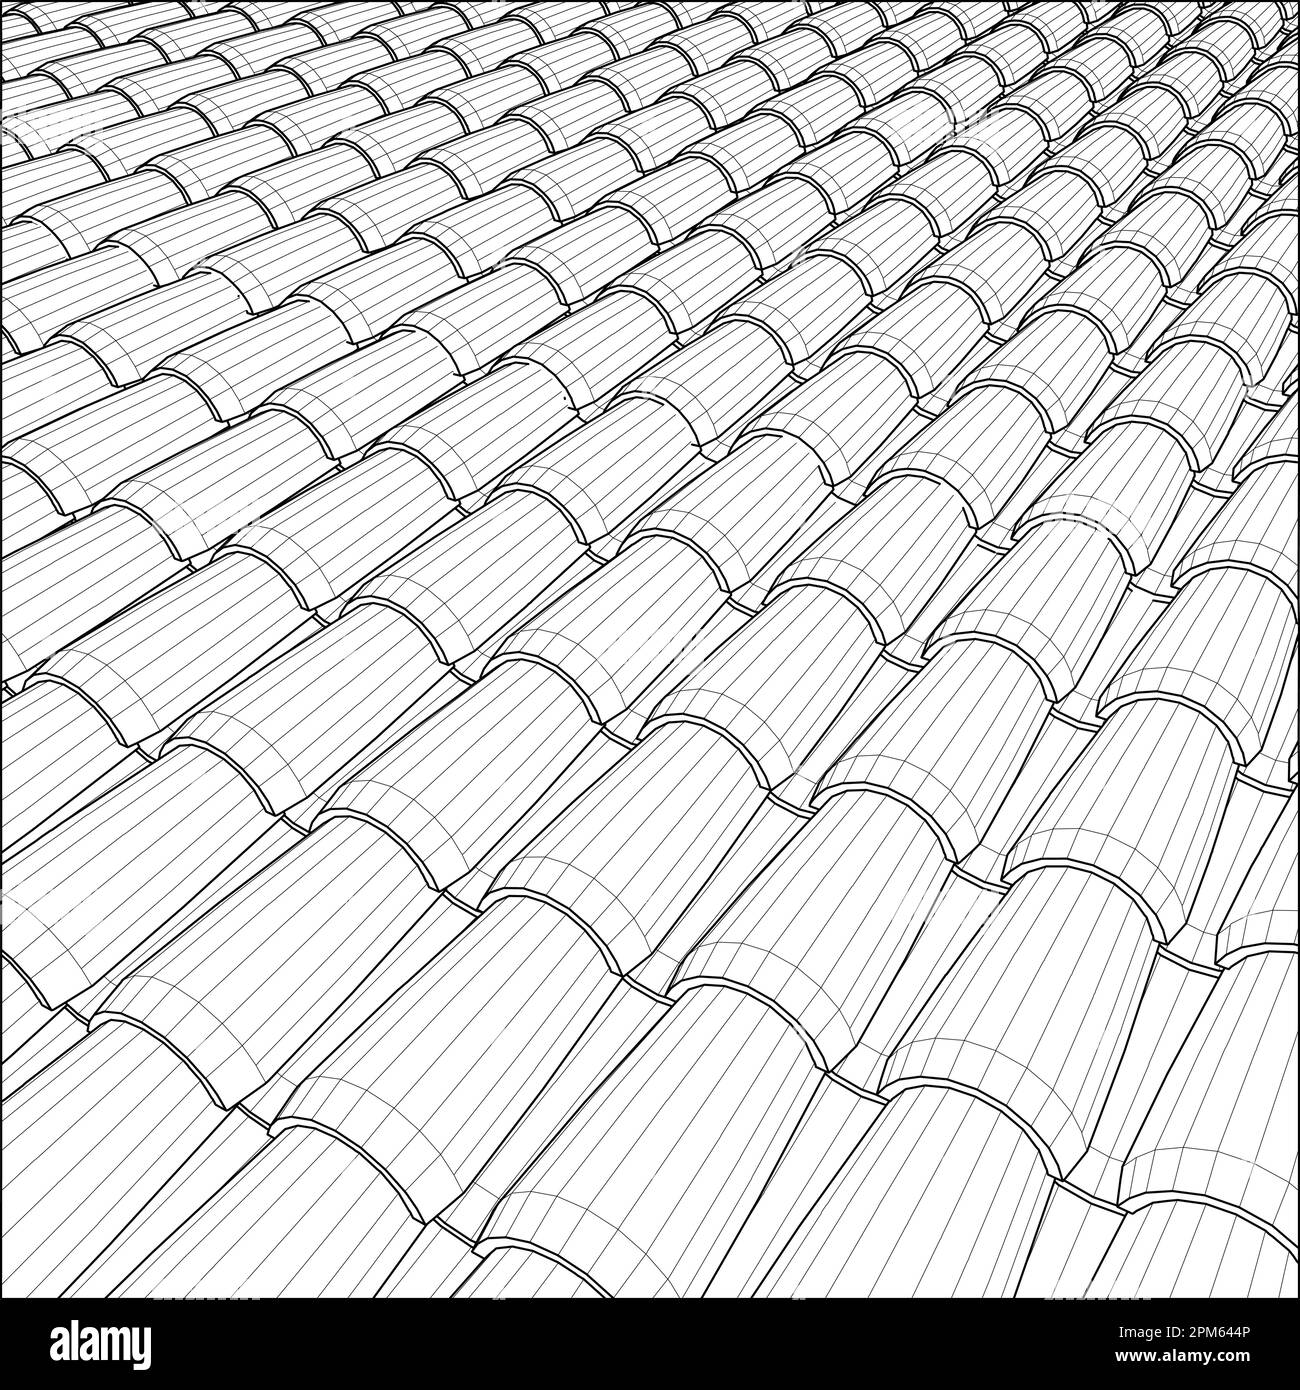 Vettore Tile Roof. Illustrazione isolata su sfondo bianco. Un'illustrazione vettoriale dello sfondo della tessera del tetto. Illustrazione Vettoriale